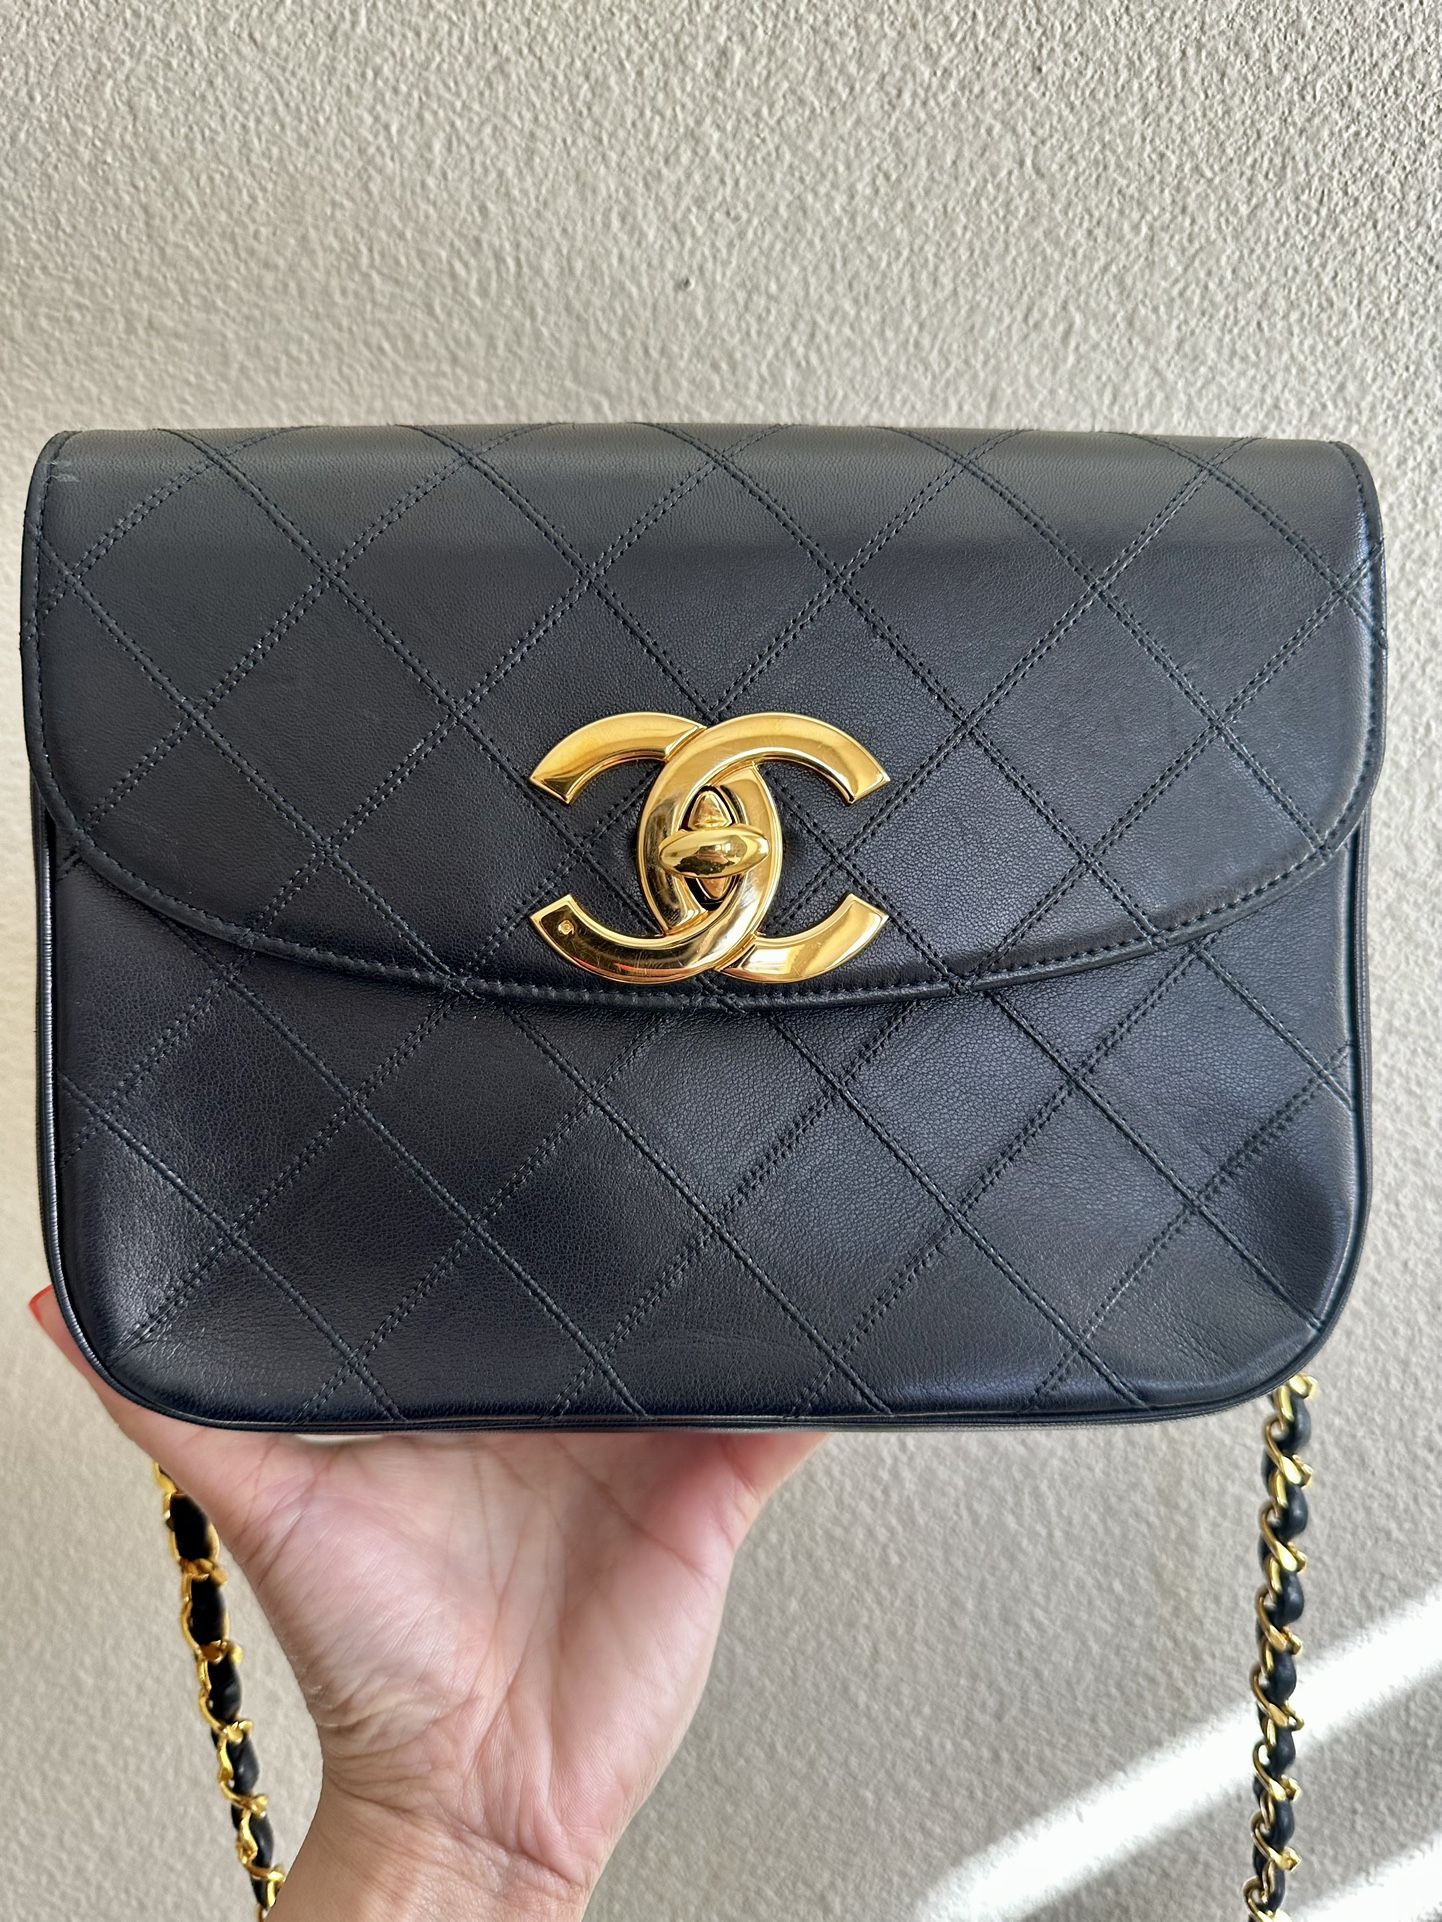 Chanel Precision Bag for Sale in Boston, MA - OfferUp